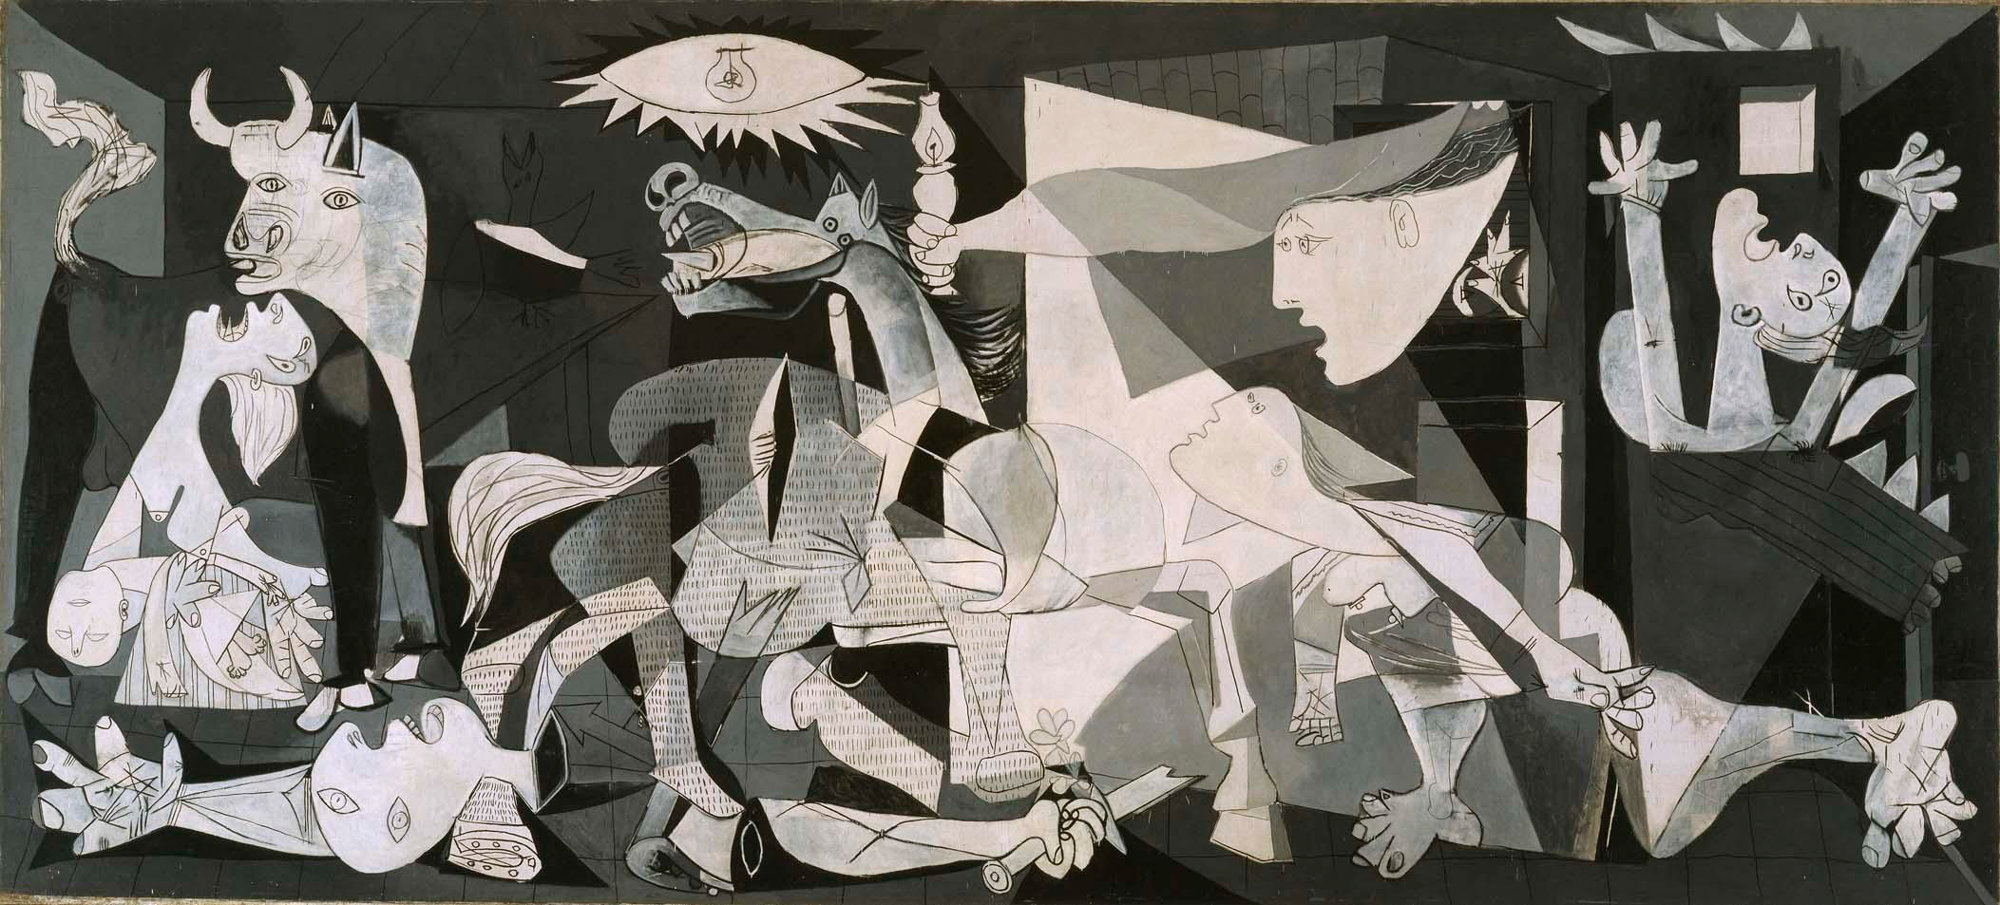 El Guernica, Pablo Picasso, 1937